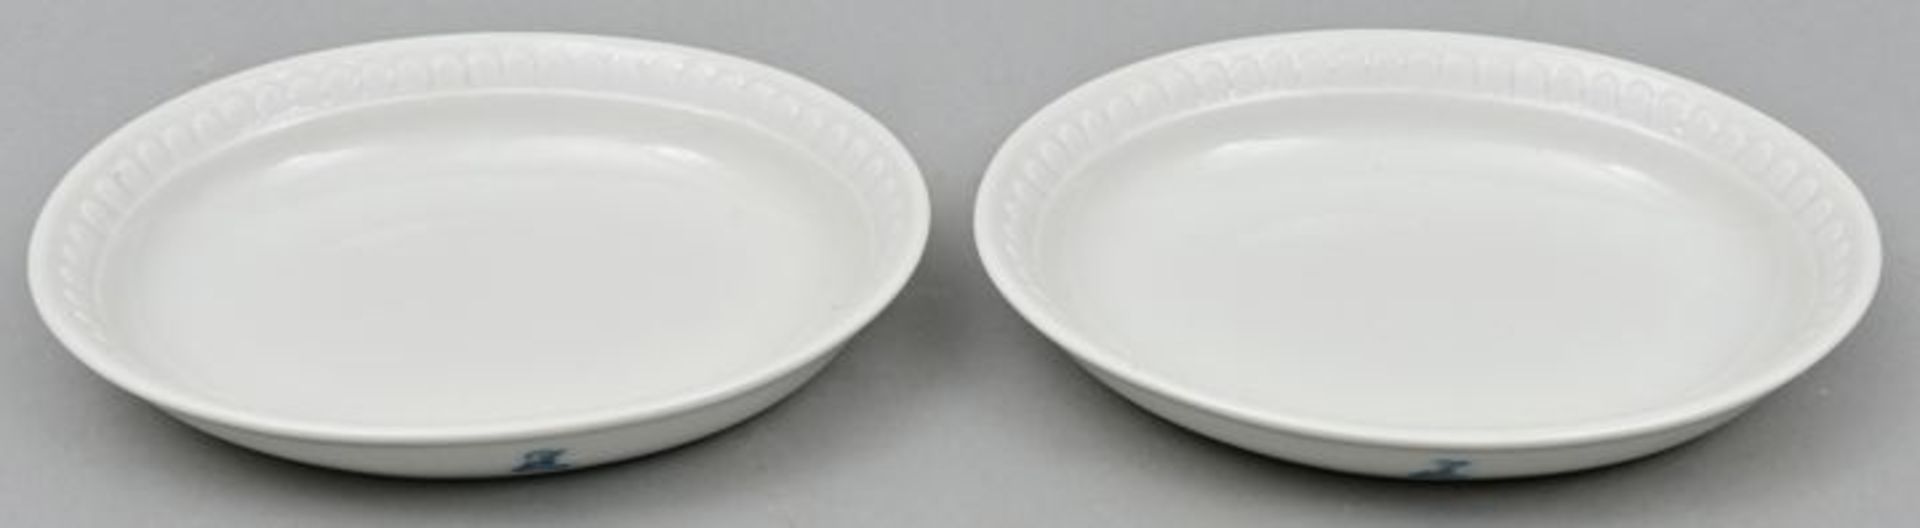 Schälchen weiß/ two bowls